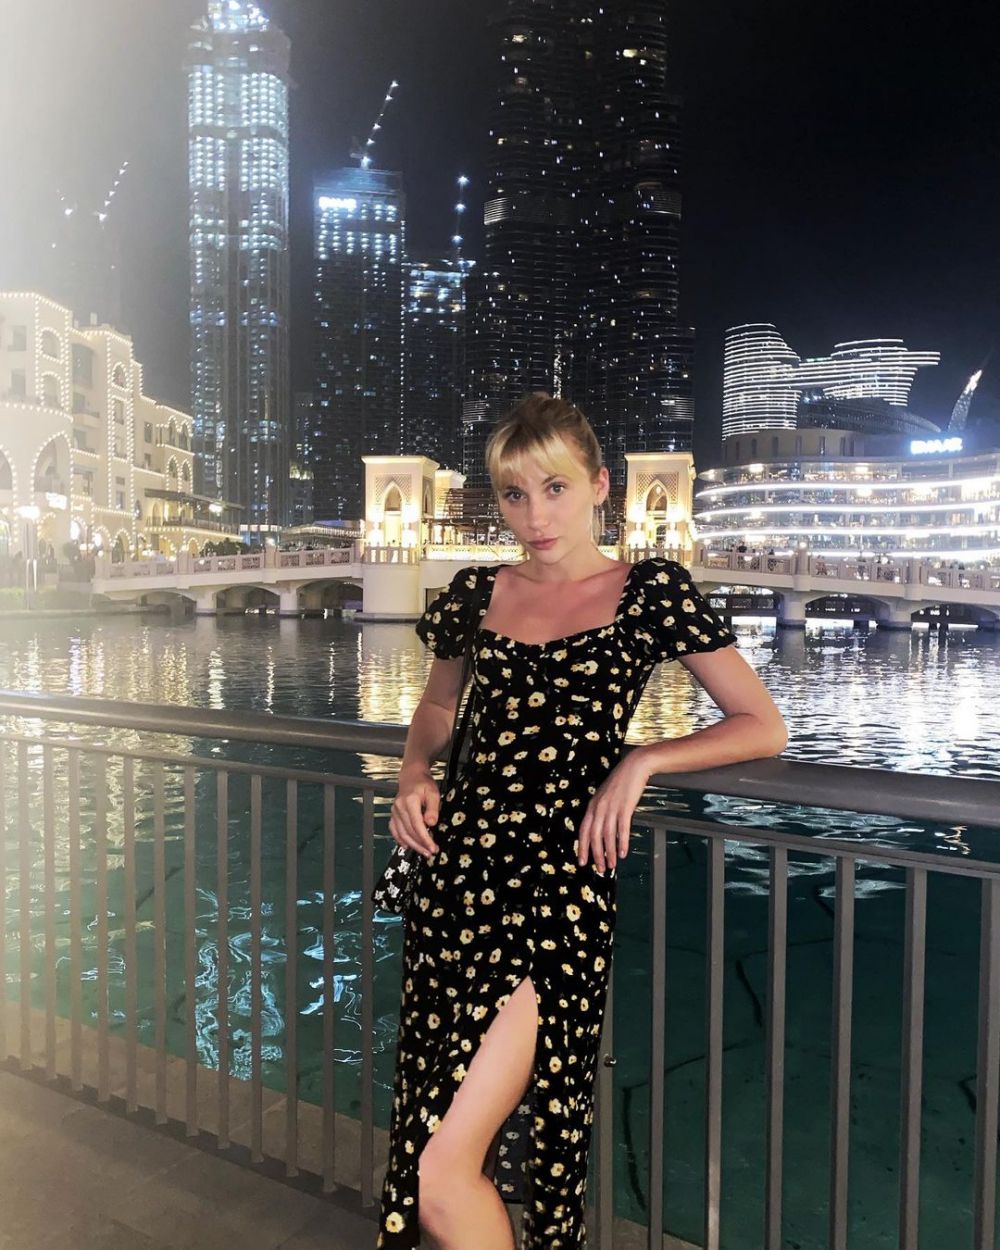 Unul dintre modelele arestate pentru pozele nud din Dubai vine cu dezvaluiri incredibile: "Ne-a fortat sa facem poza pe balcon!" Scandal monstru si acuzatii dure_20